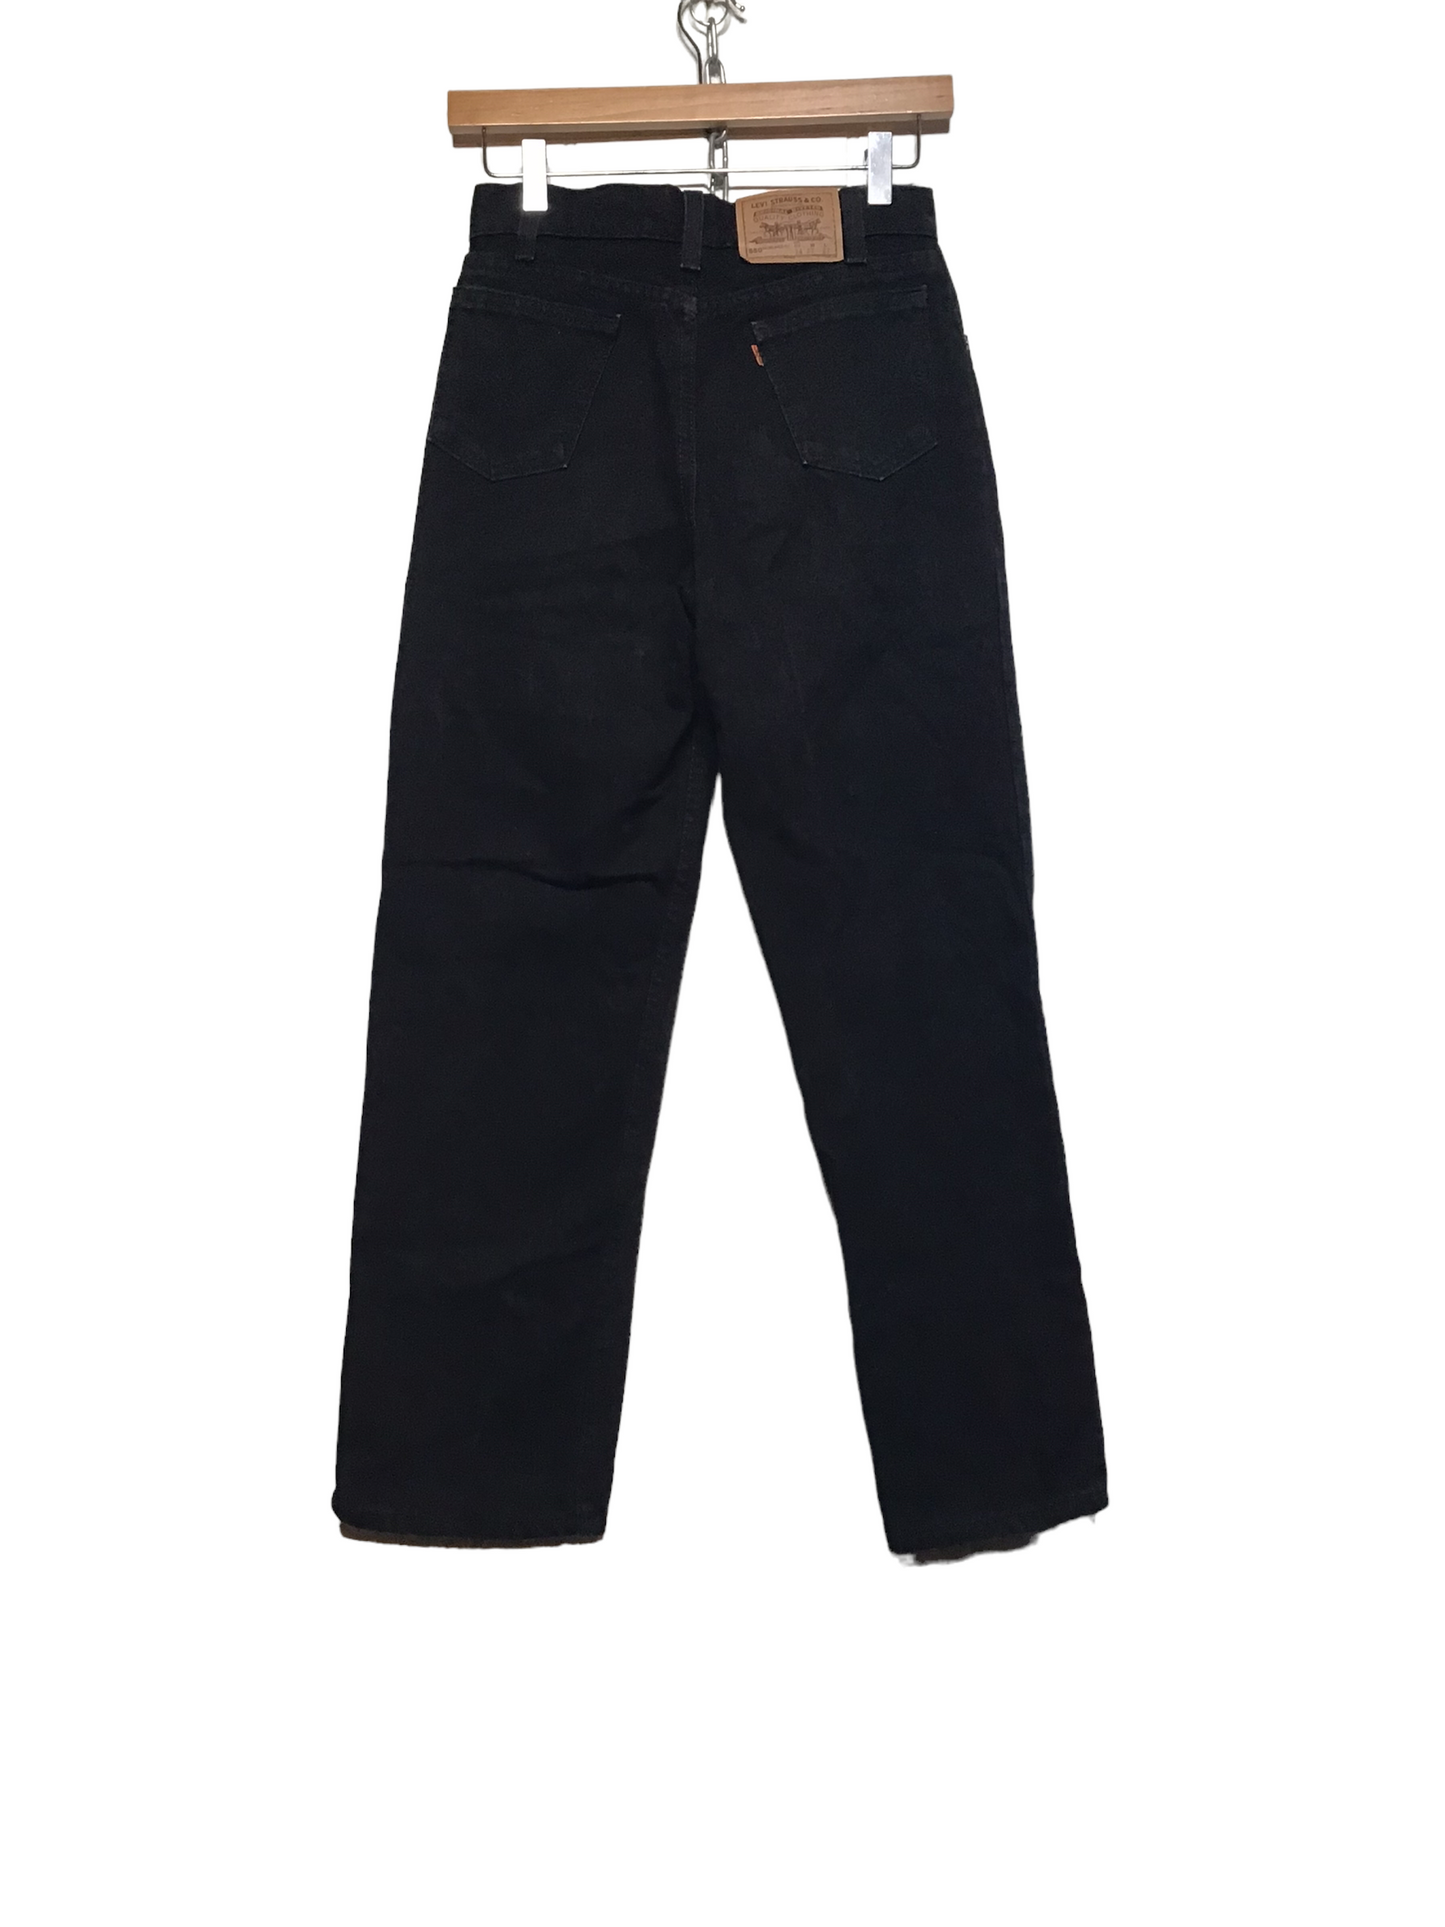 Levi 550 Black Jeans (27X27)